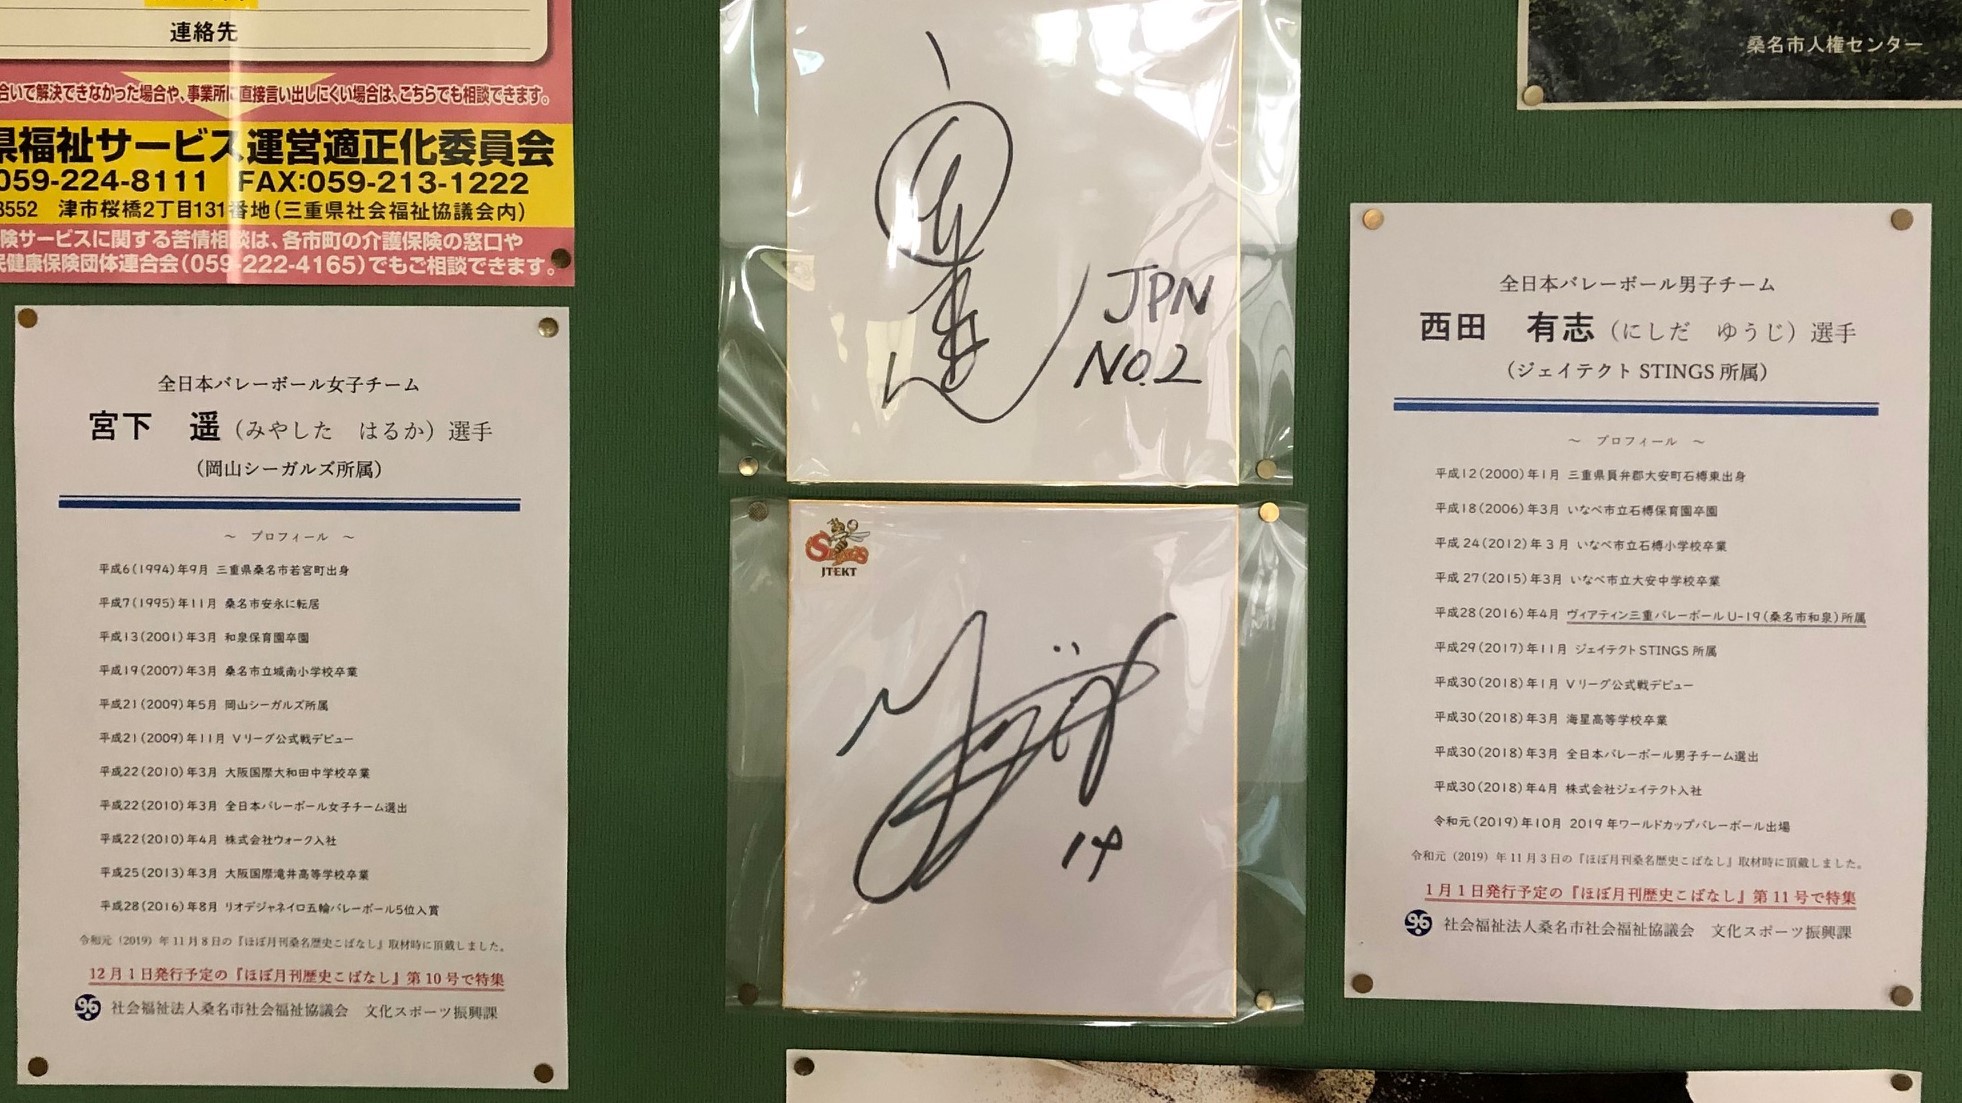 桑名市総合福祉会館に掲示した宮下遥選手と西田有志選手のサイン